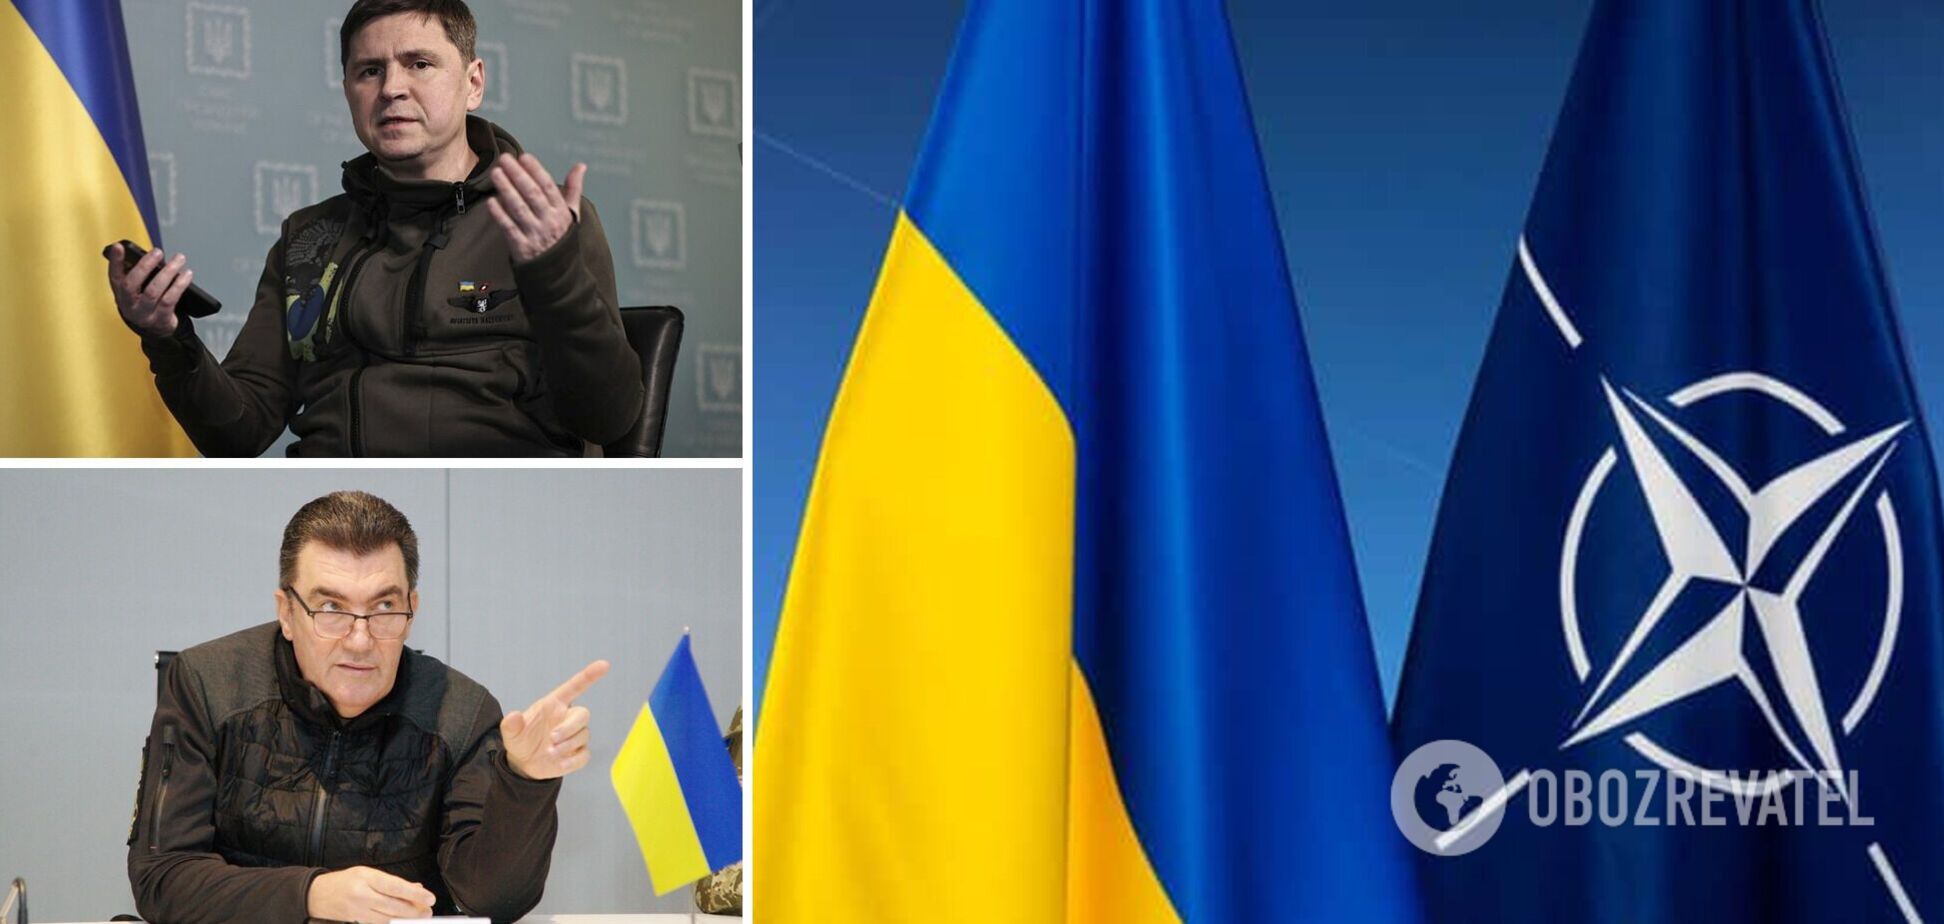 'Не треба заохочувати вбивць': в Україні відреагували на ідею розміну території на членство в НАТО